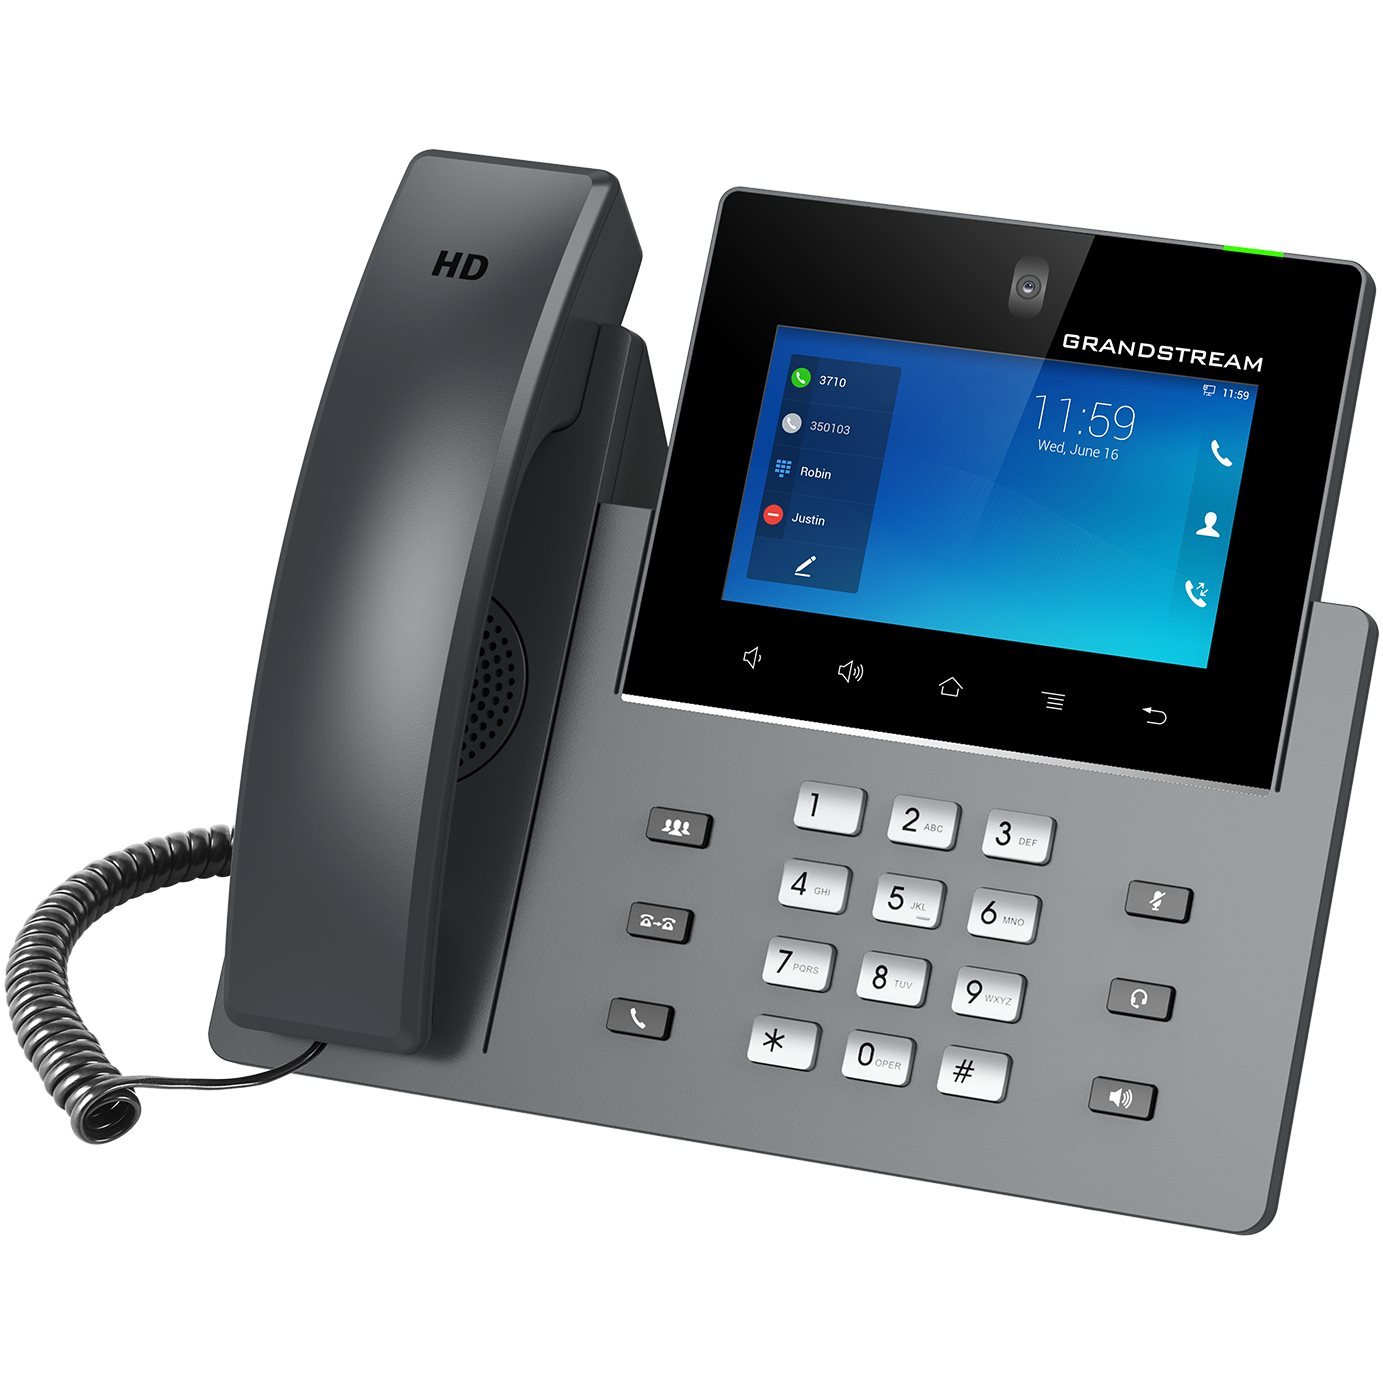   Téléphones SIP   Grandstream GXV 3350 IP phone optimis 2n 1120111EU